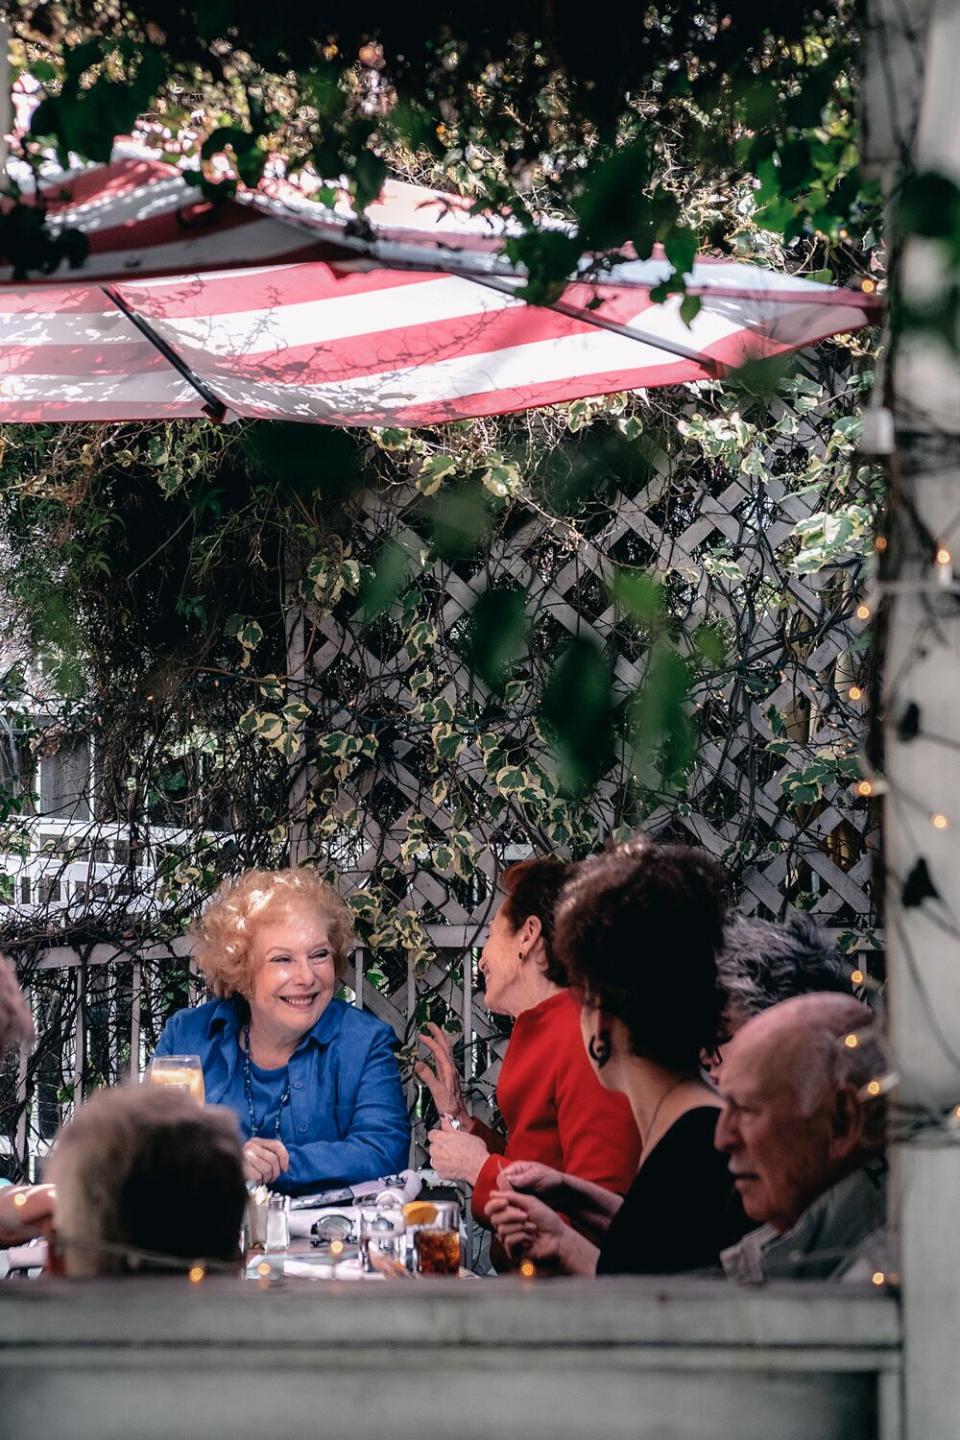 People dine on a terrace under umbrellas.